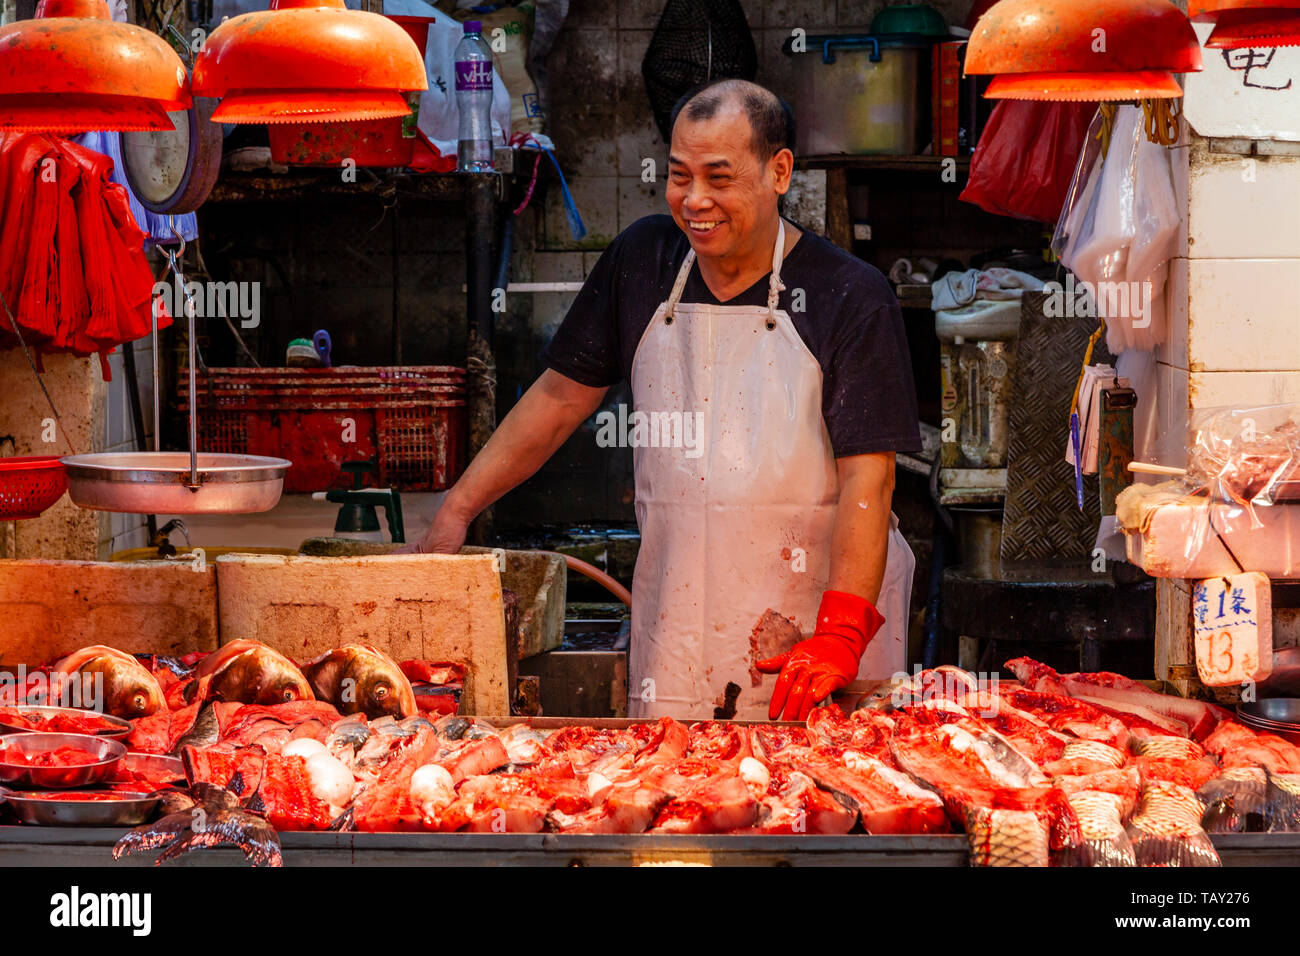 A Smiling Worker At A Wet Fish Shop, Bowrington Road Food Market, Hong Kong, China Stock Photo